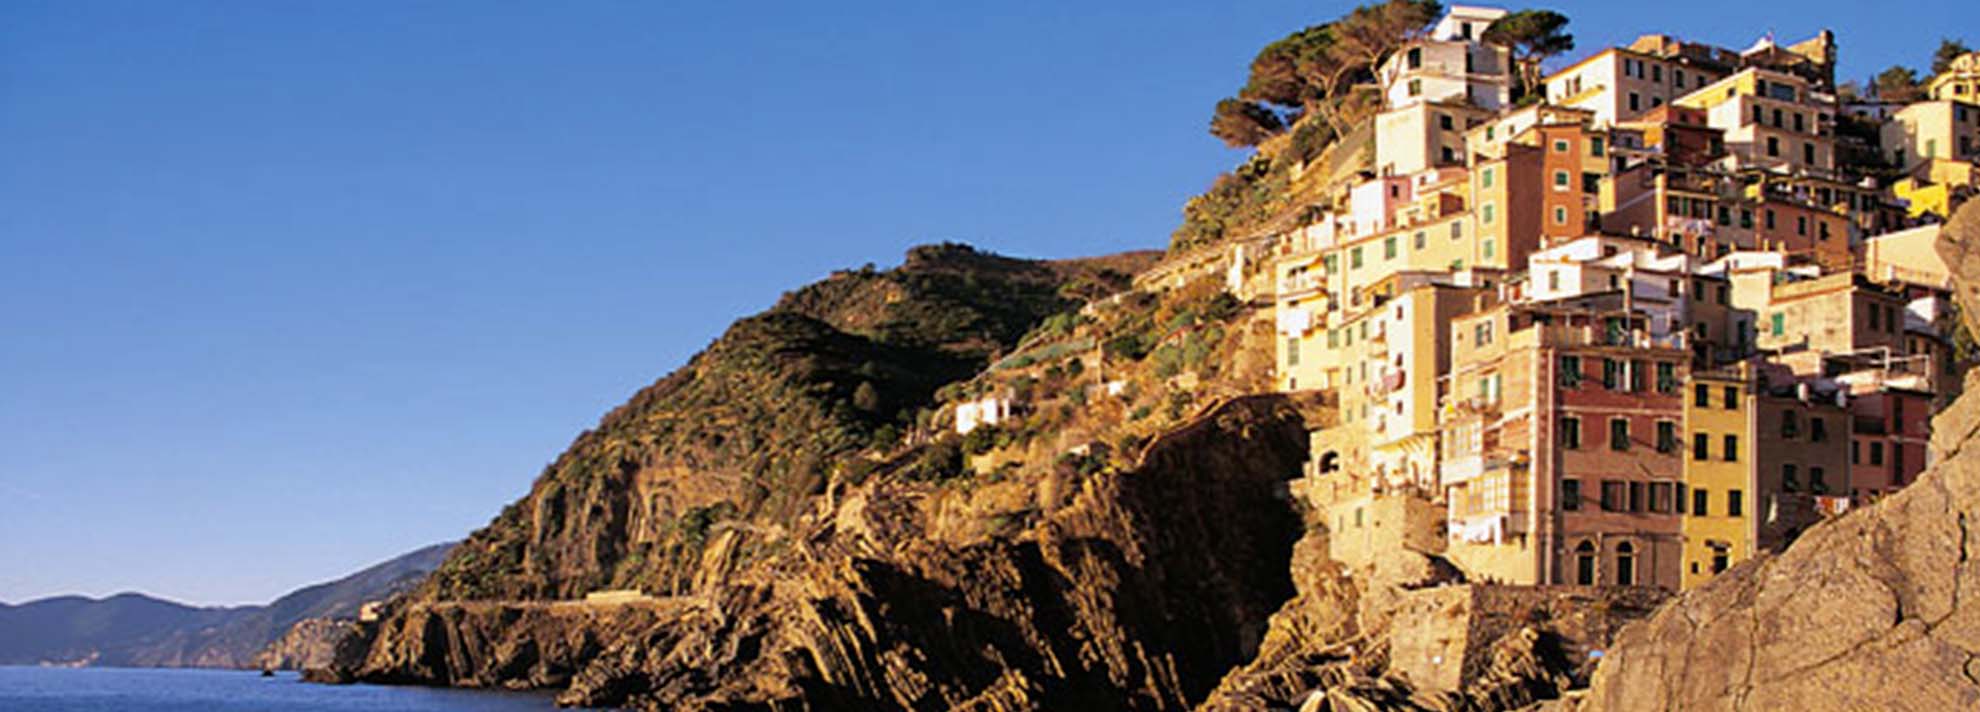 Castello di Riomaggiore: eterno amore nel cuore delle Cinque Terre